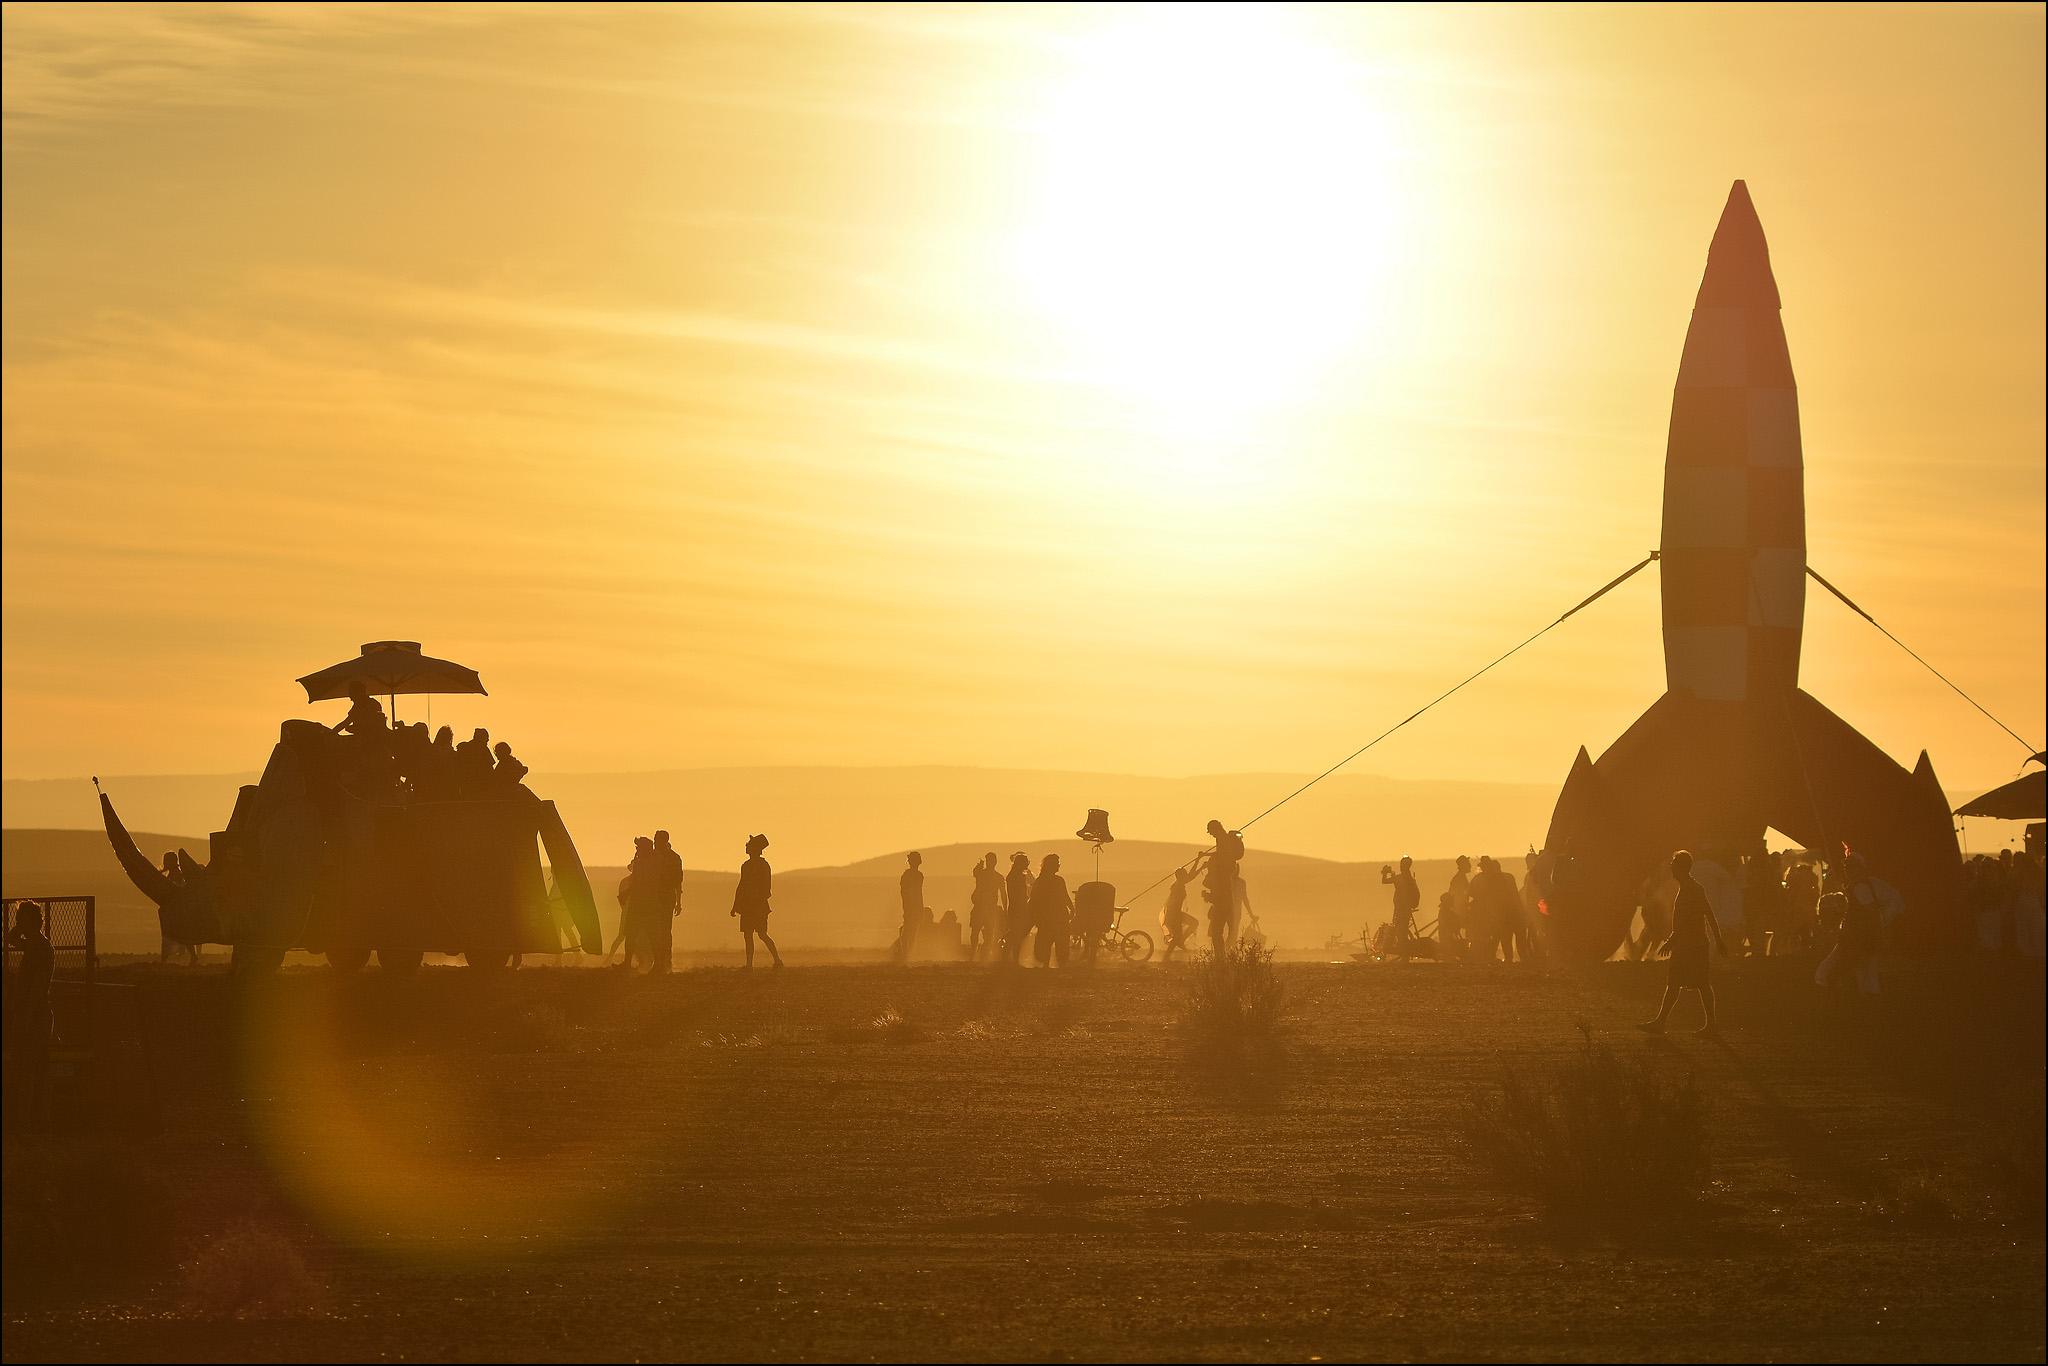 AfrikaBurn scene with rocket